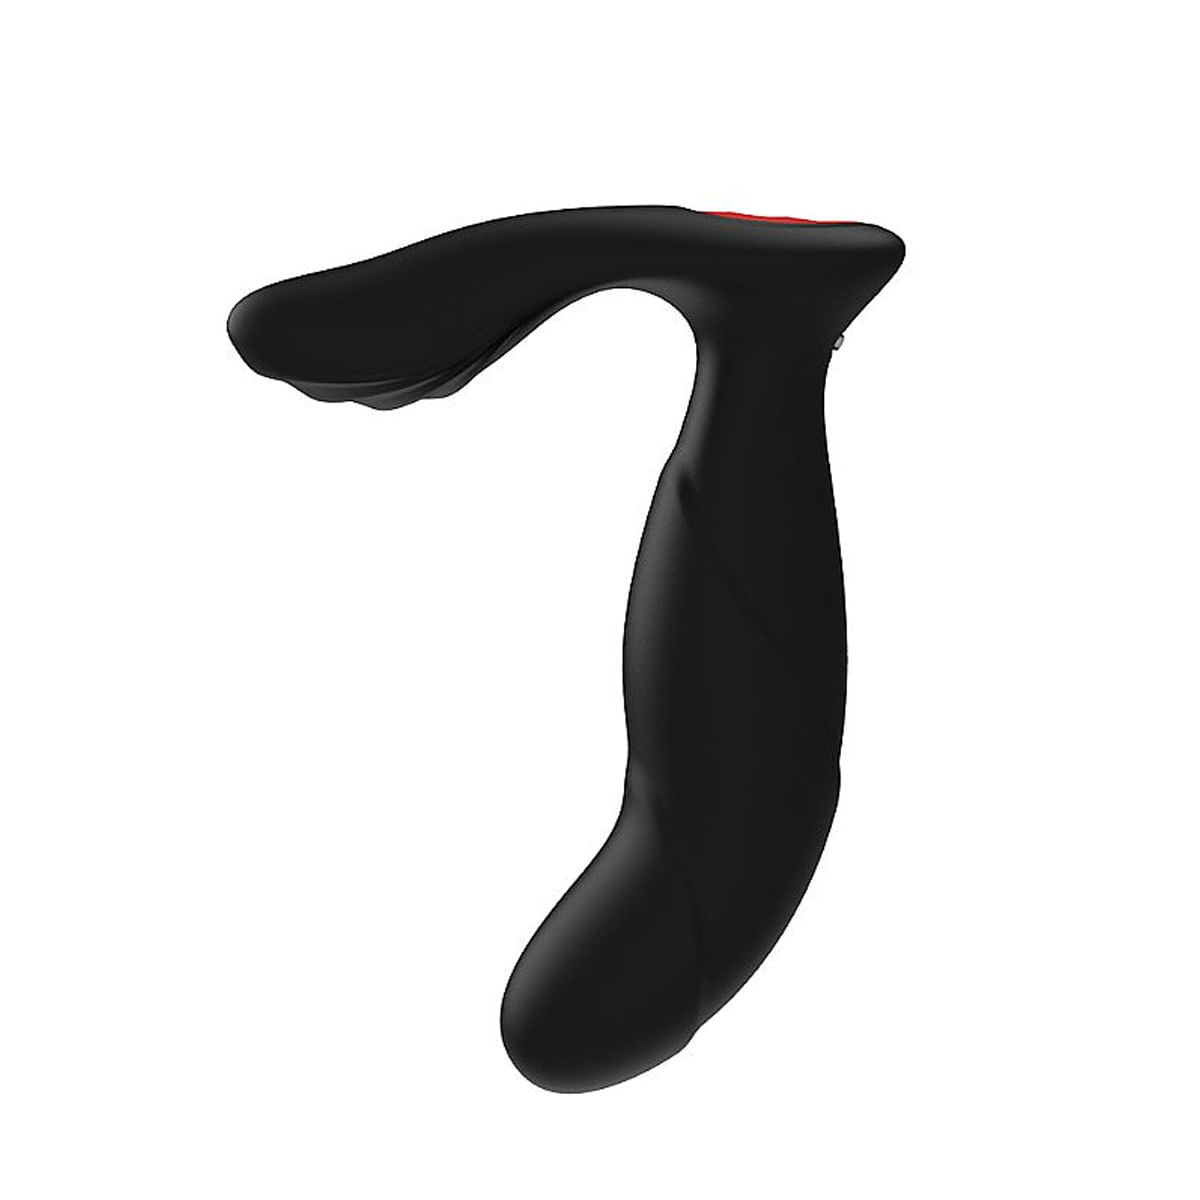 S-Hande Laken-RCT Massageador Ponto G e Clitoris/ Plug Anal e 9 Modos de Vibração Sexy Import